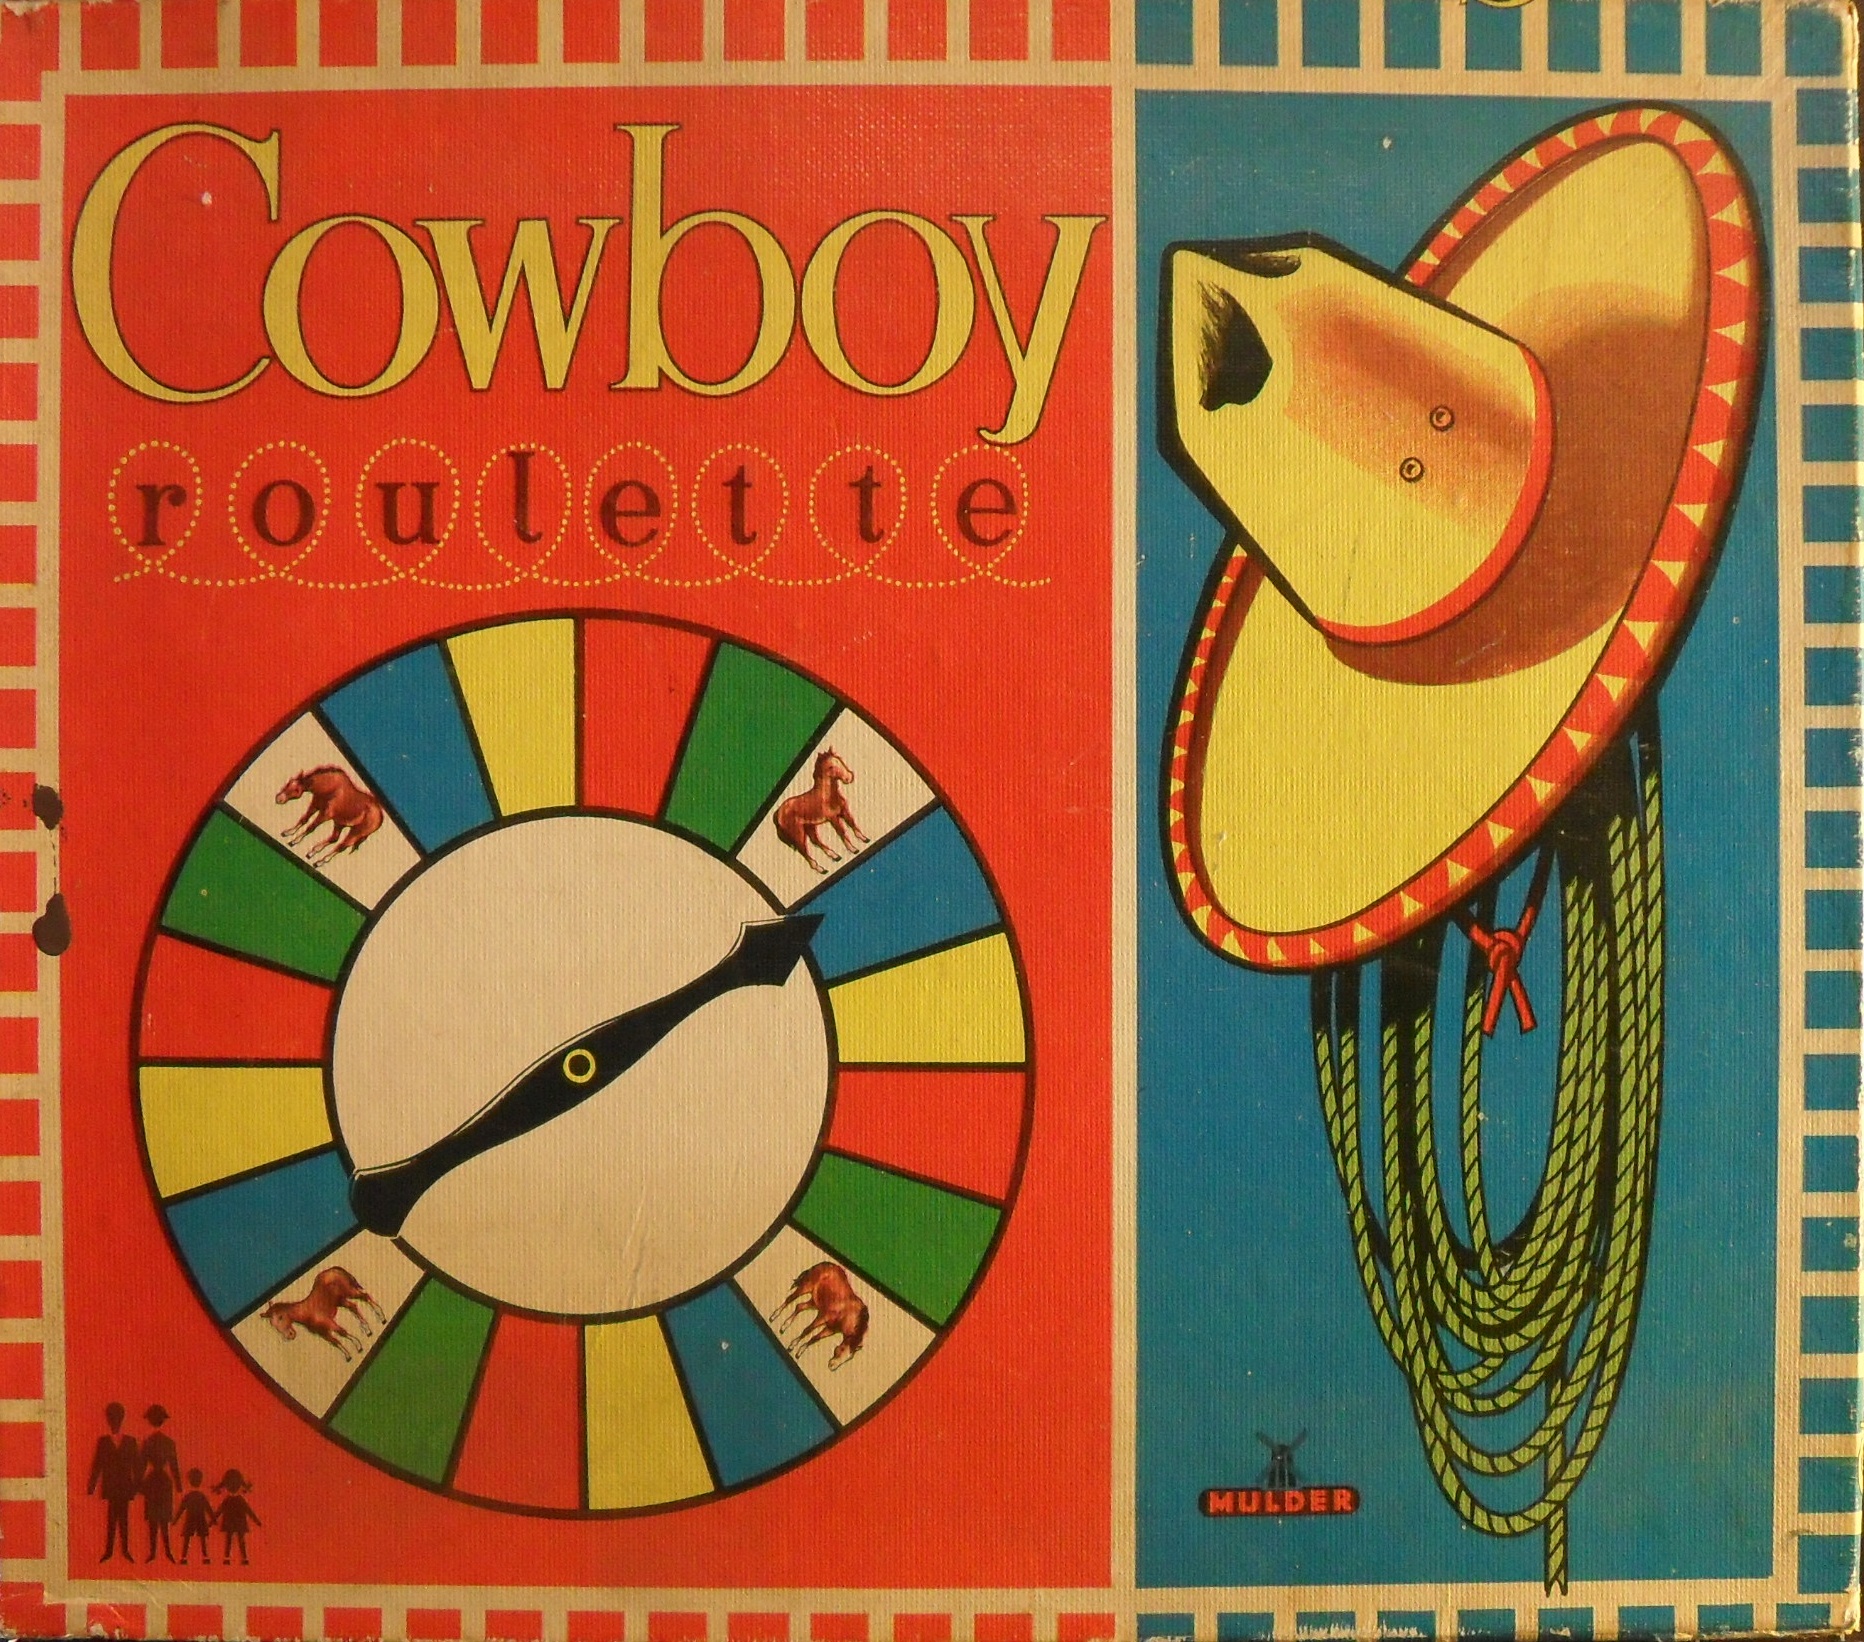 Cowboy Roulette